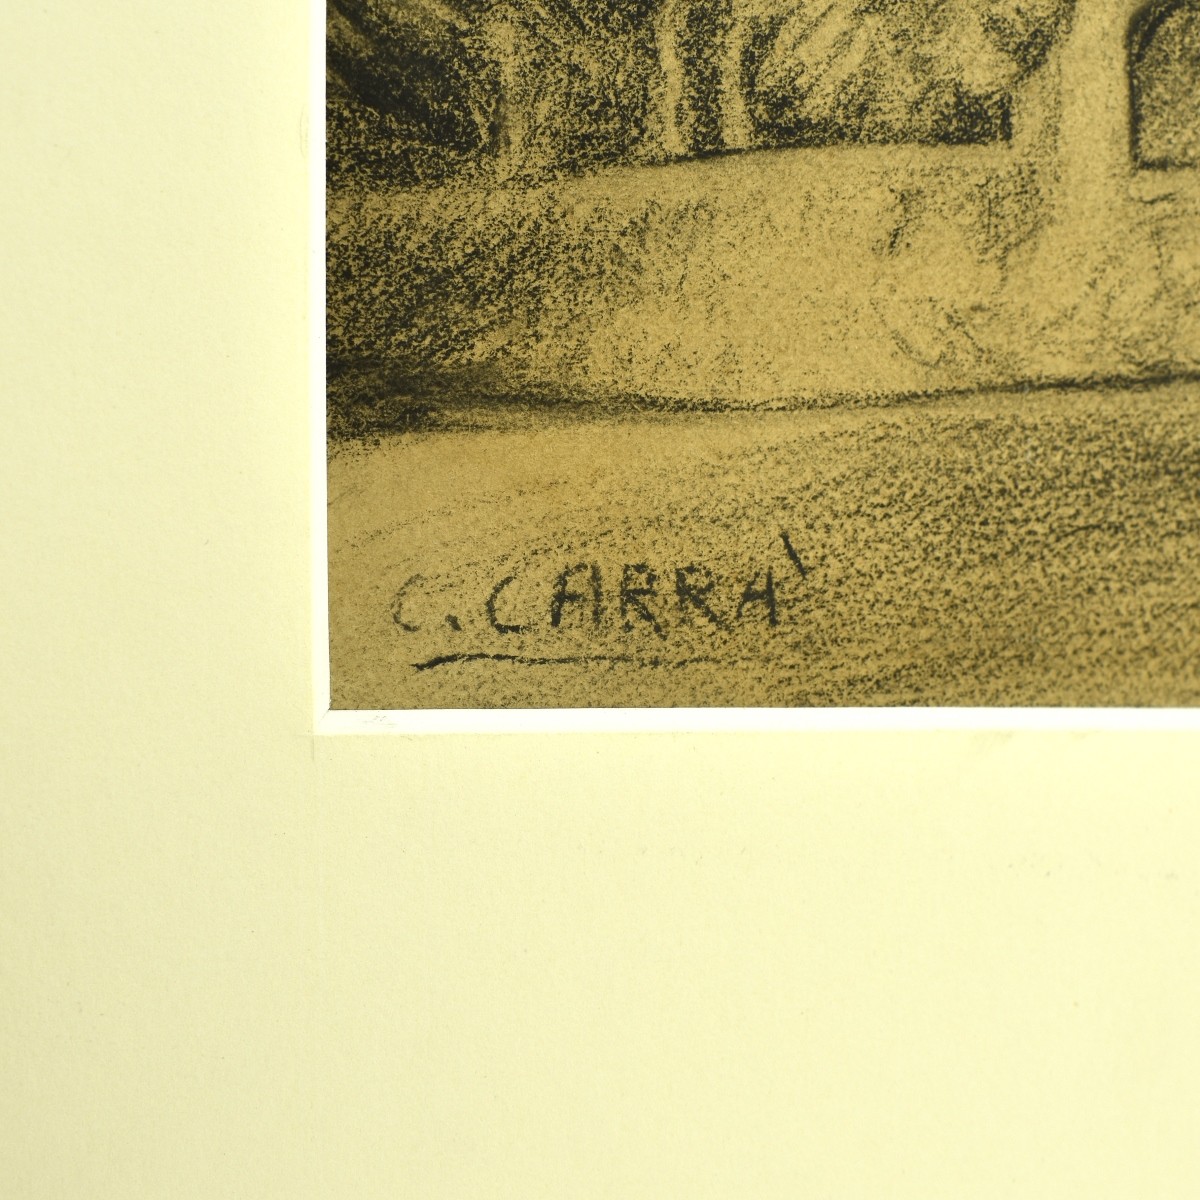 Carlo Carrà, Italian (1881–1966) Charcoal on card